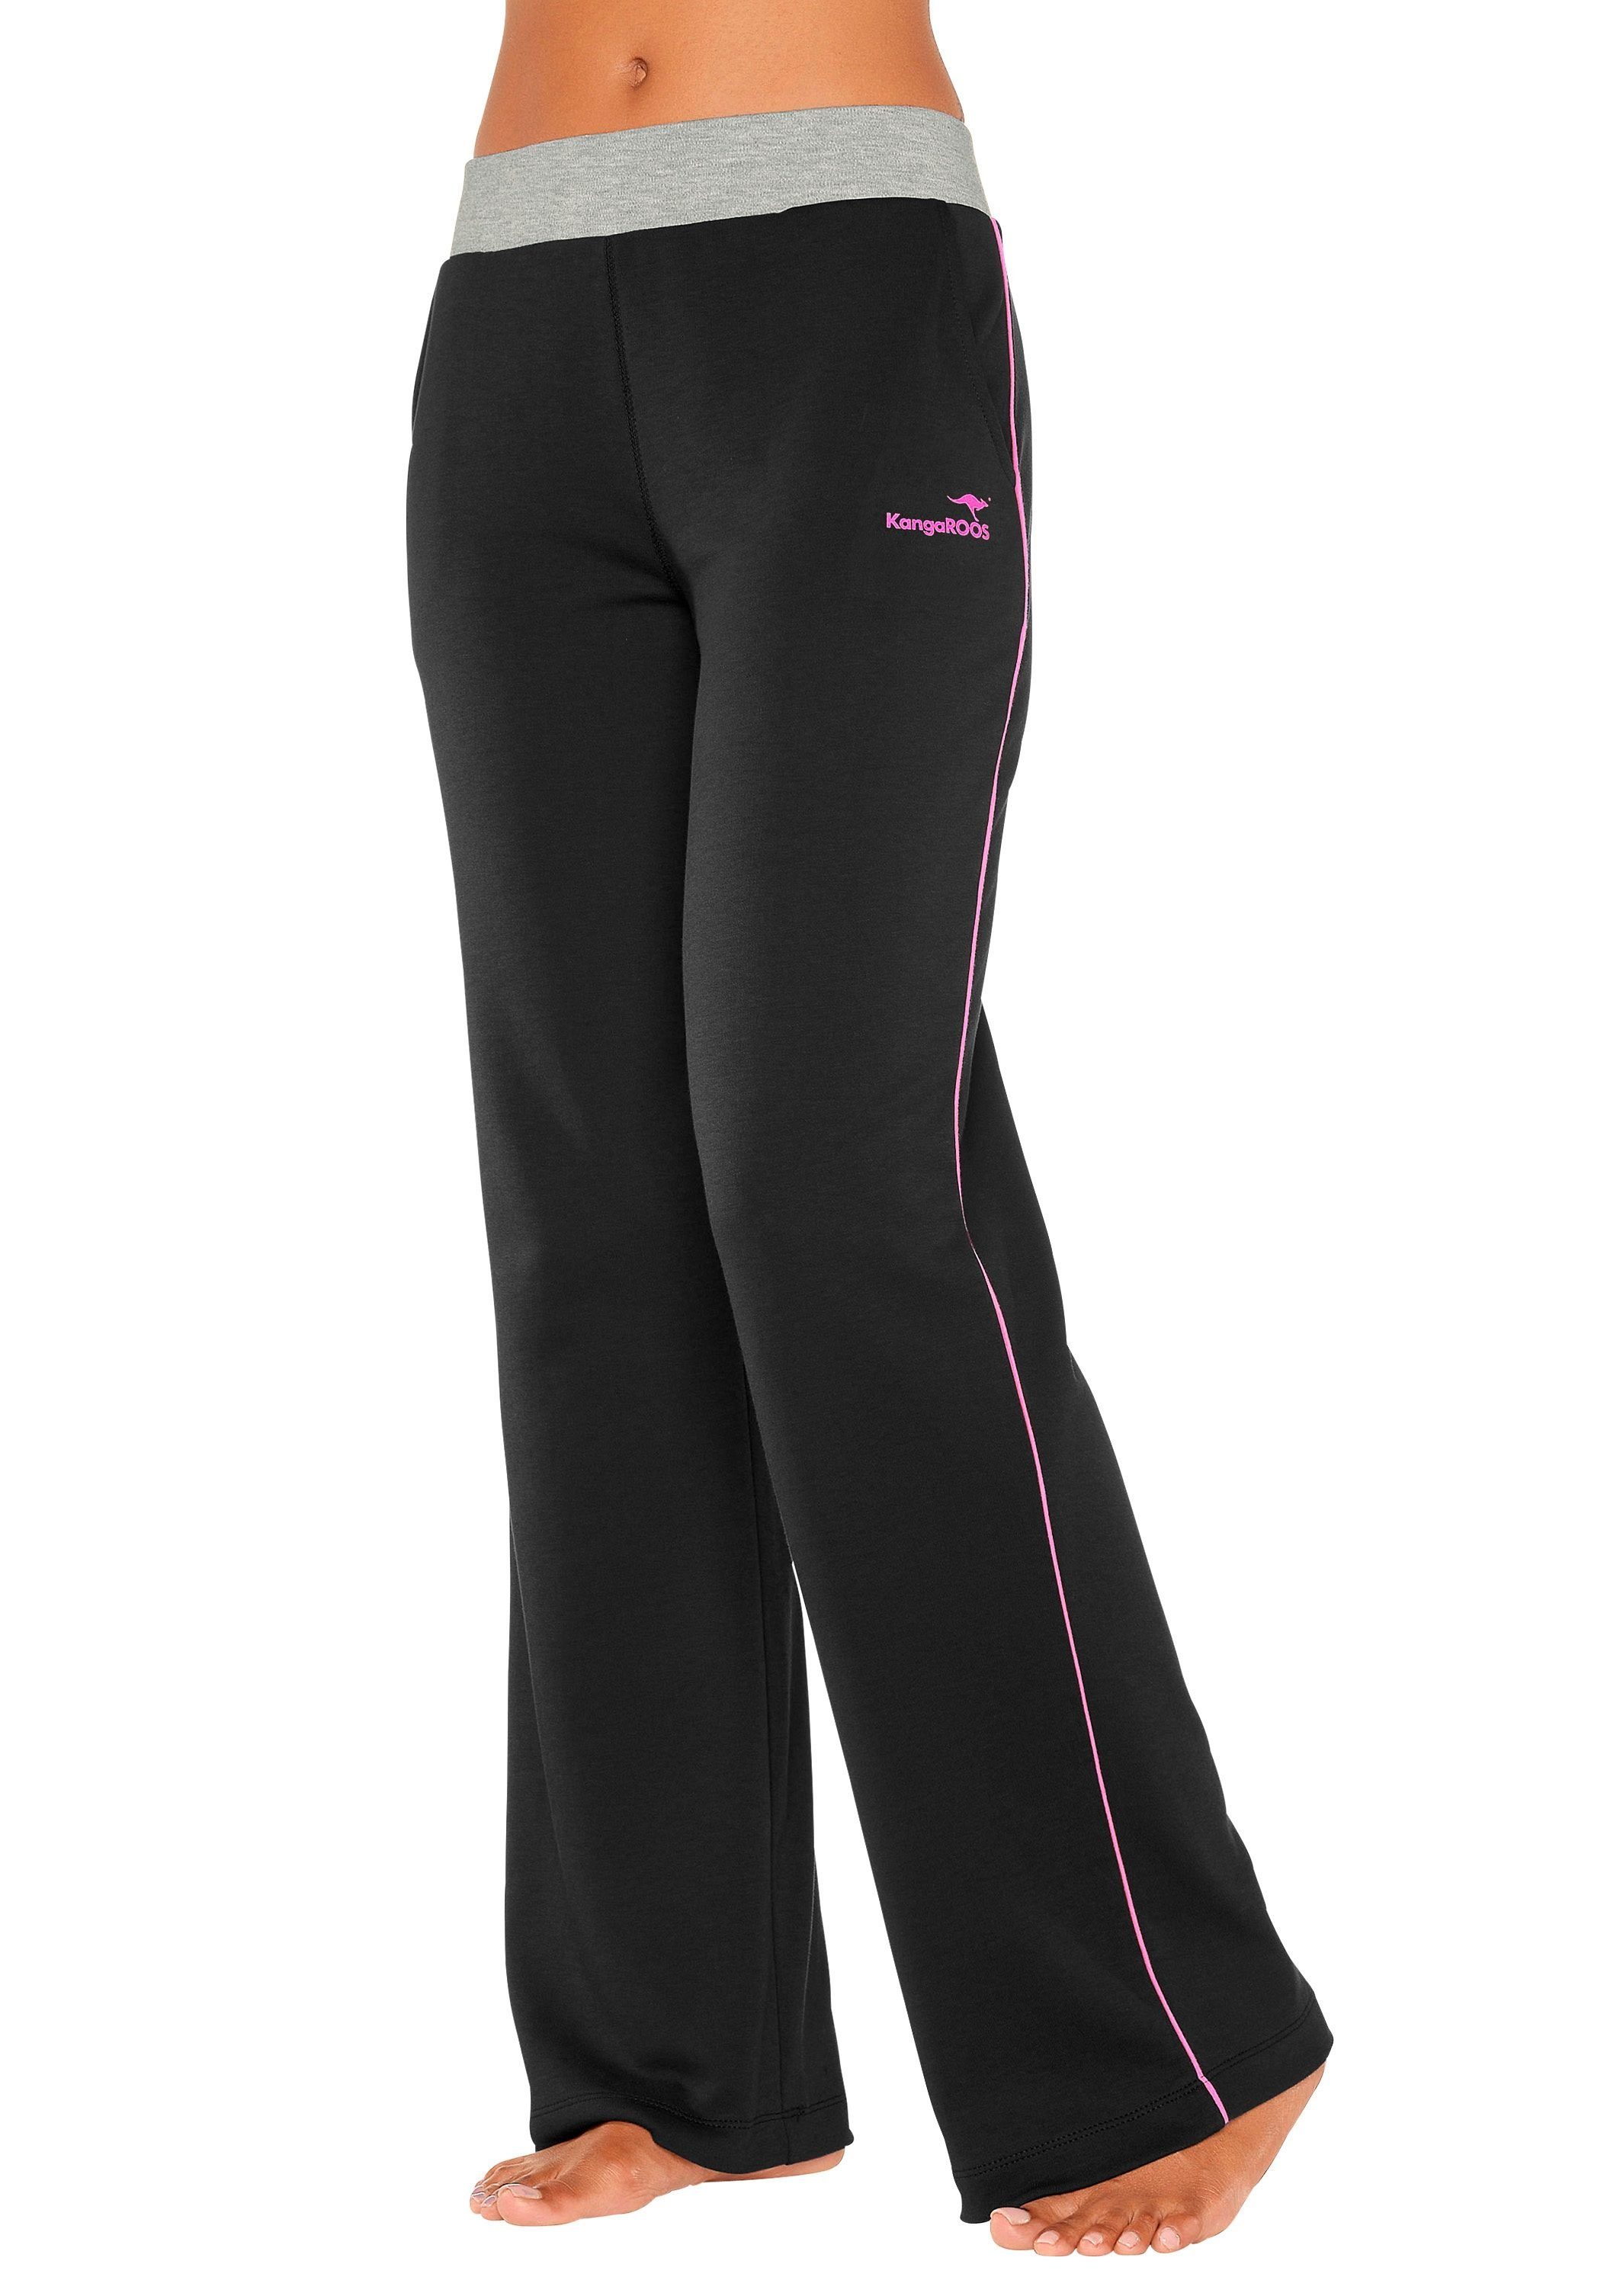 KangaROOS mit schwarz-pink-pink breitem Relaxhose Loungeanzug Loungewear, Bund,